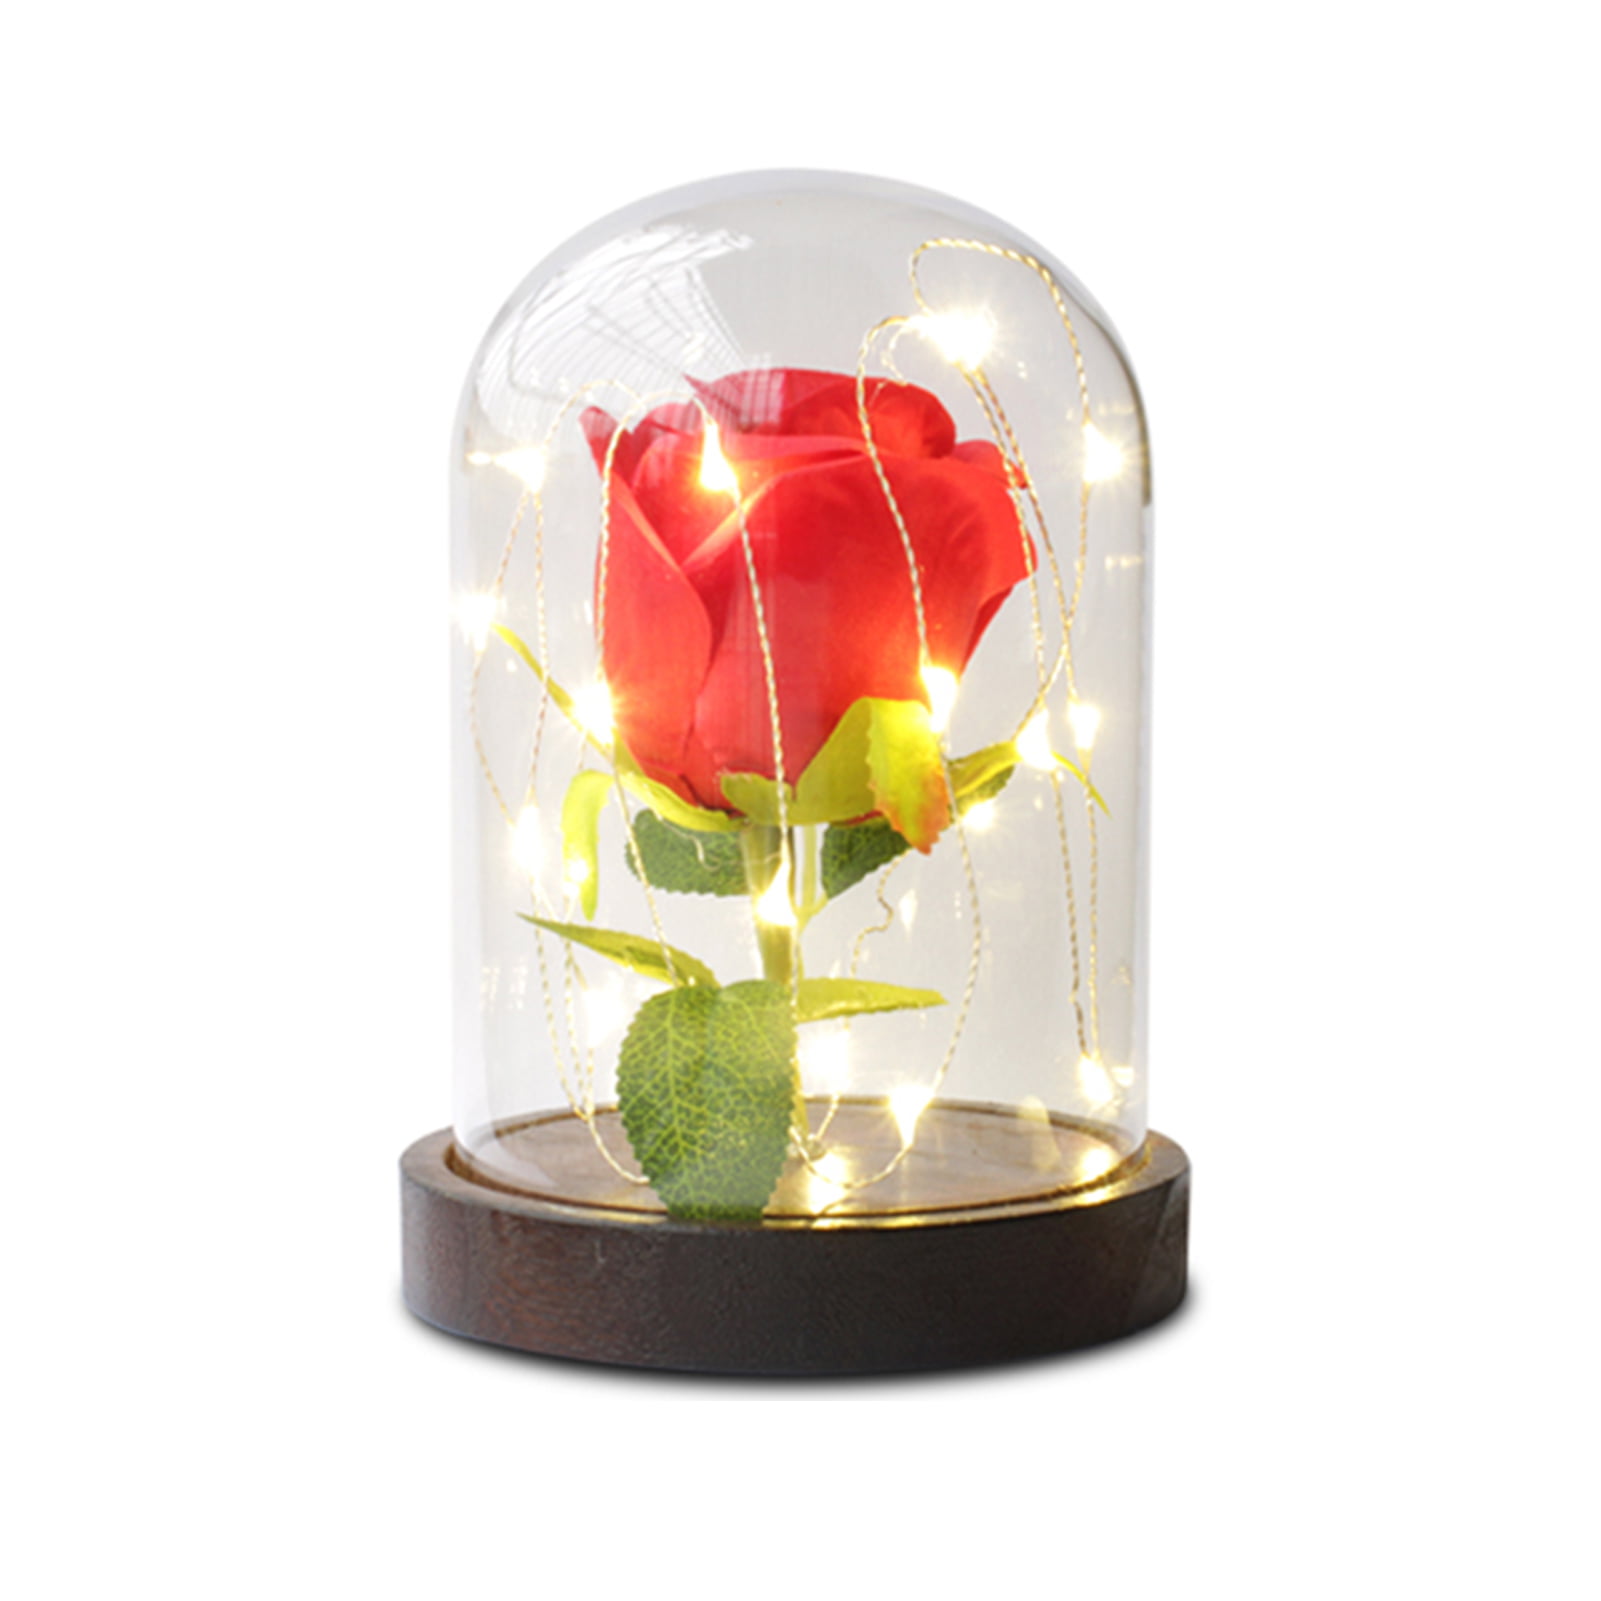 20LED Enchanted Rose Glass Dome Light Lamp Christmas Wedding Home Decor Gift Kit 